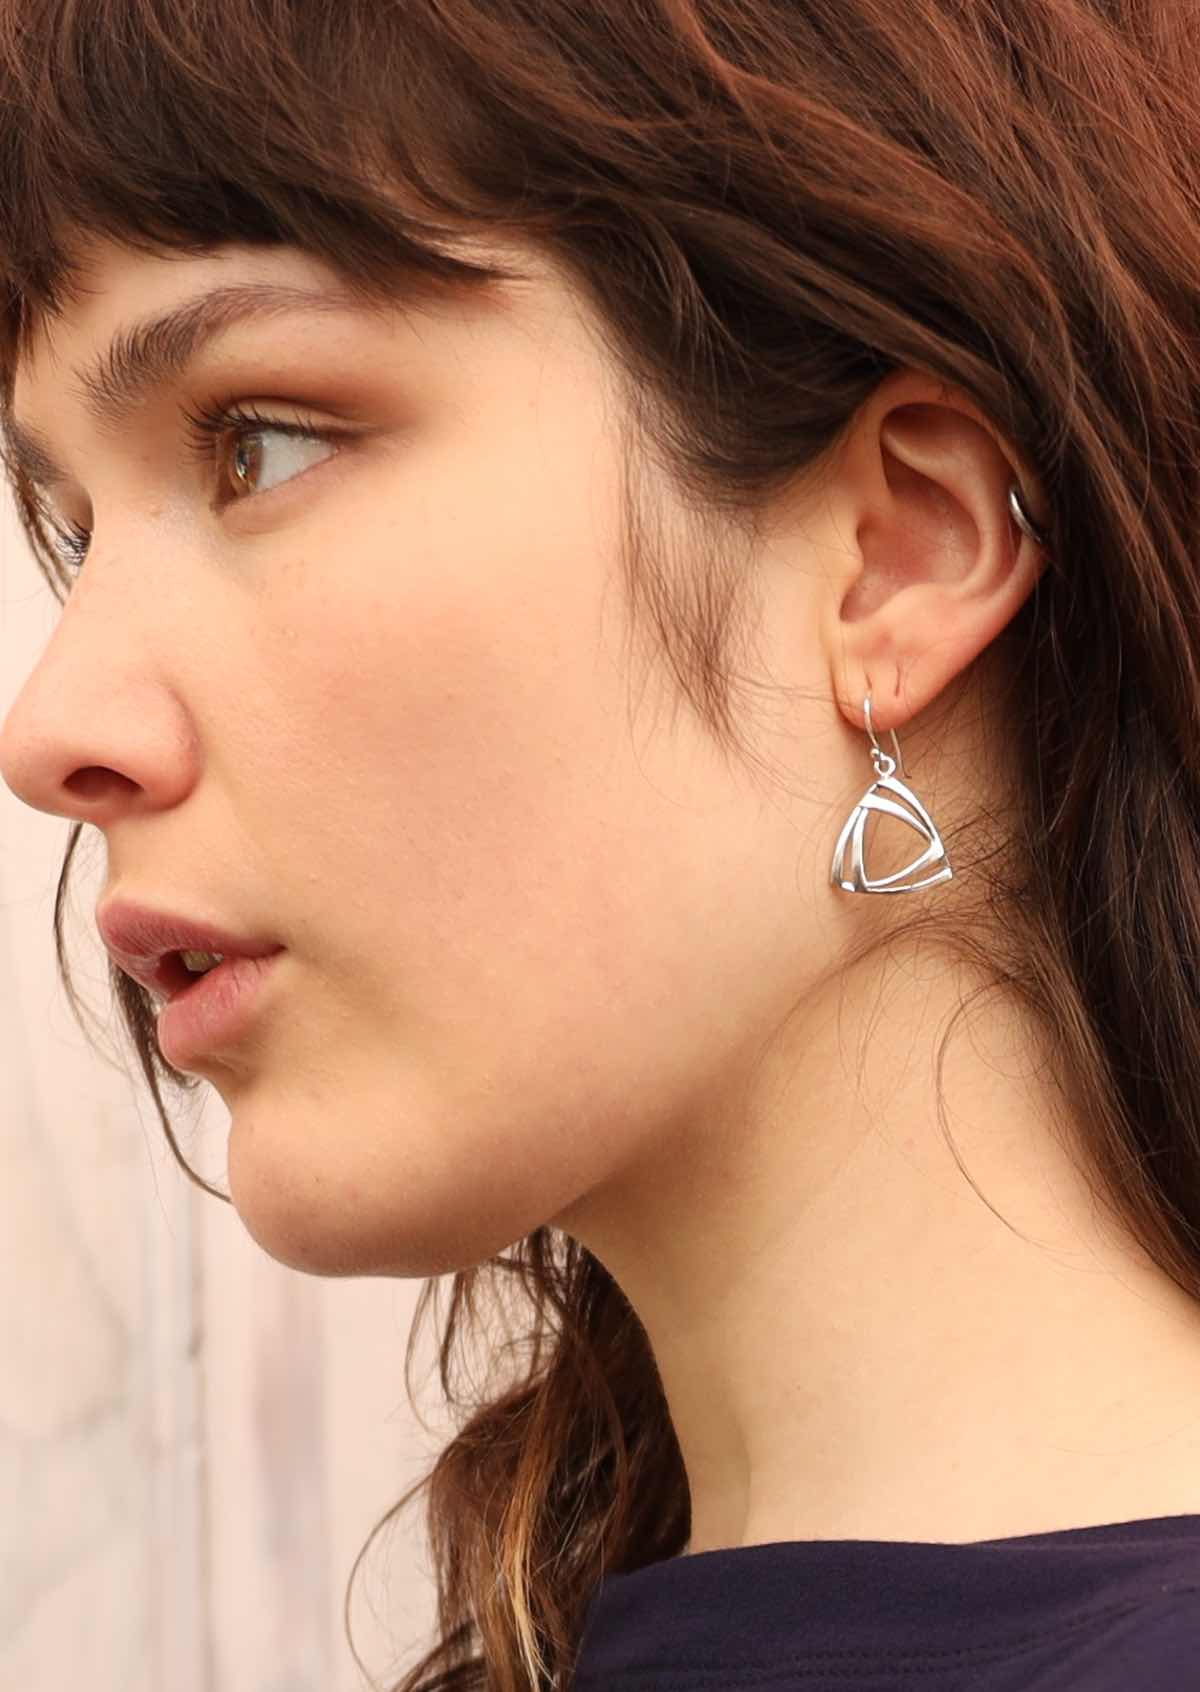 Model wearing dangly silver triangle earrings